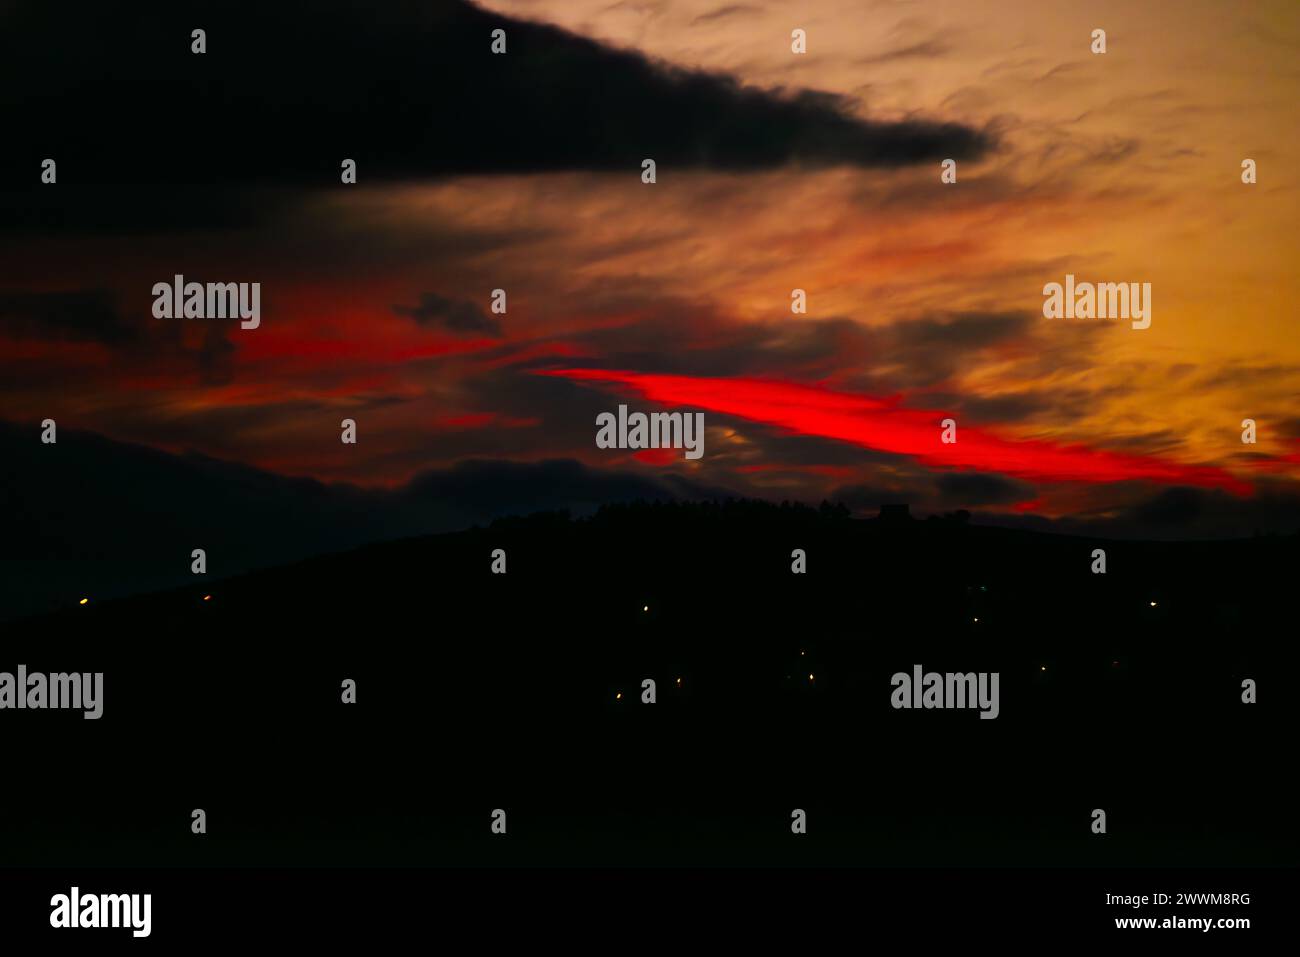 Nel tranquillo crepuscolo, un tramonto rosso inonda il cielo di sfumature ardenti, creando uno spettacolo suggestivo e celeste all'orizzonte. Foto Stock